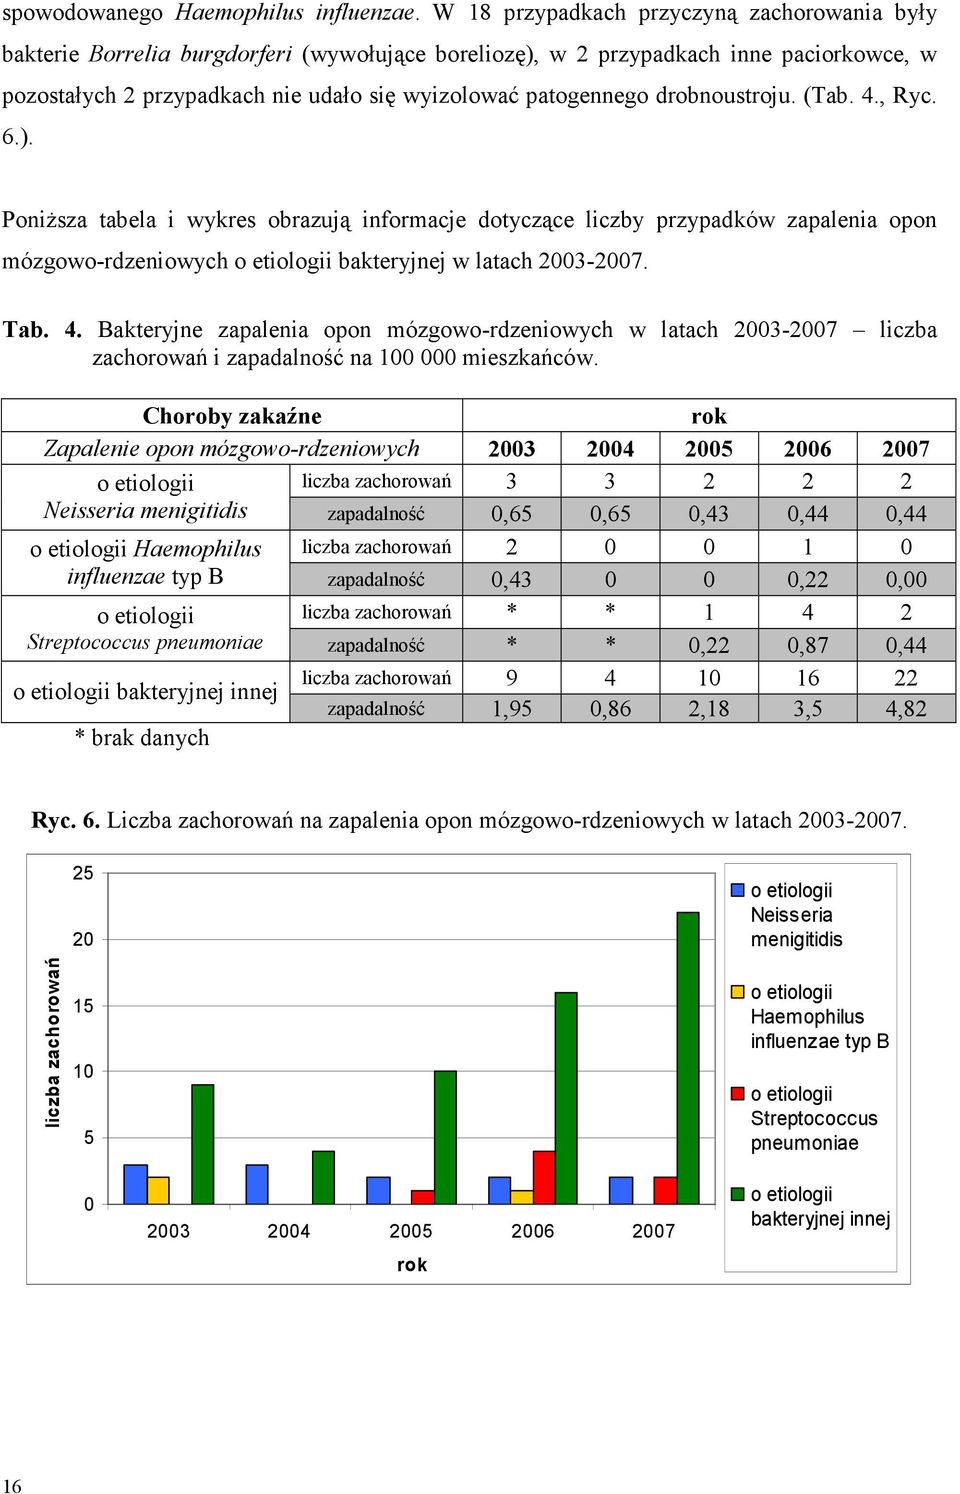 drobnoustroju. (Tab. 4., Ryc. 6.). PoniŜsza tabela i wykres obrazują informacje dotyczące liczby przypadków zapalenia opon mózgowo-rdzeniowych o etiologii bakteryjnej w latach 2003-2007. Tab. 4. Bakteryjne zapalenia opon mózgowo-rdzeniowych w latach 2003-2007 liczba zachorowań i zapadalność na 100 000 mieszkańców.